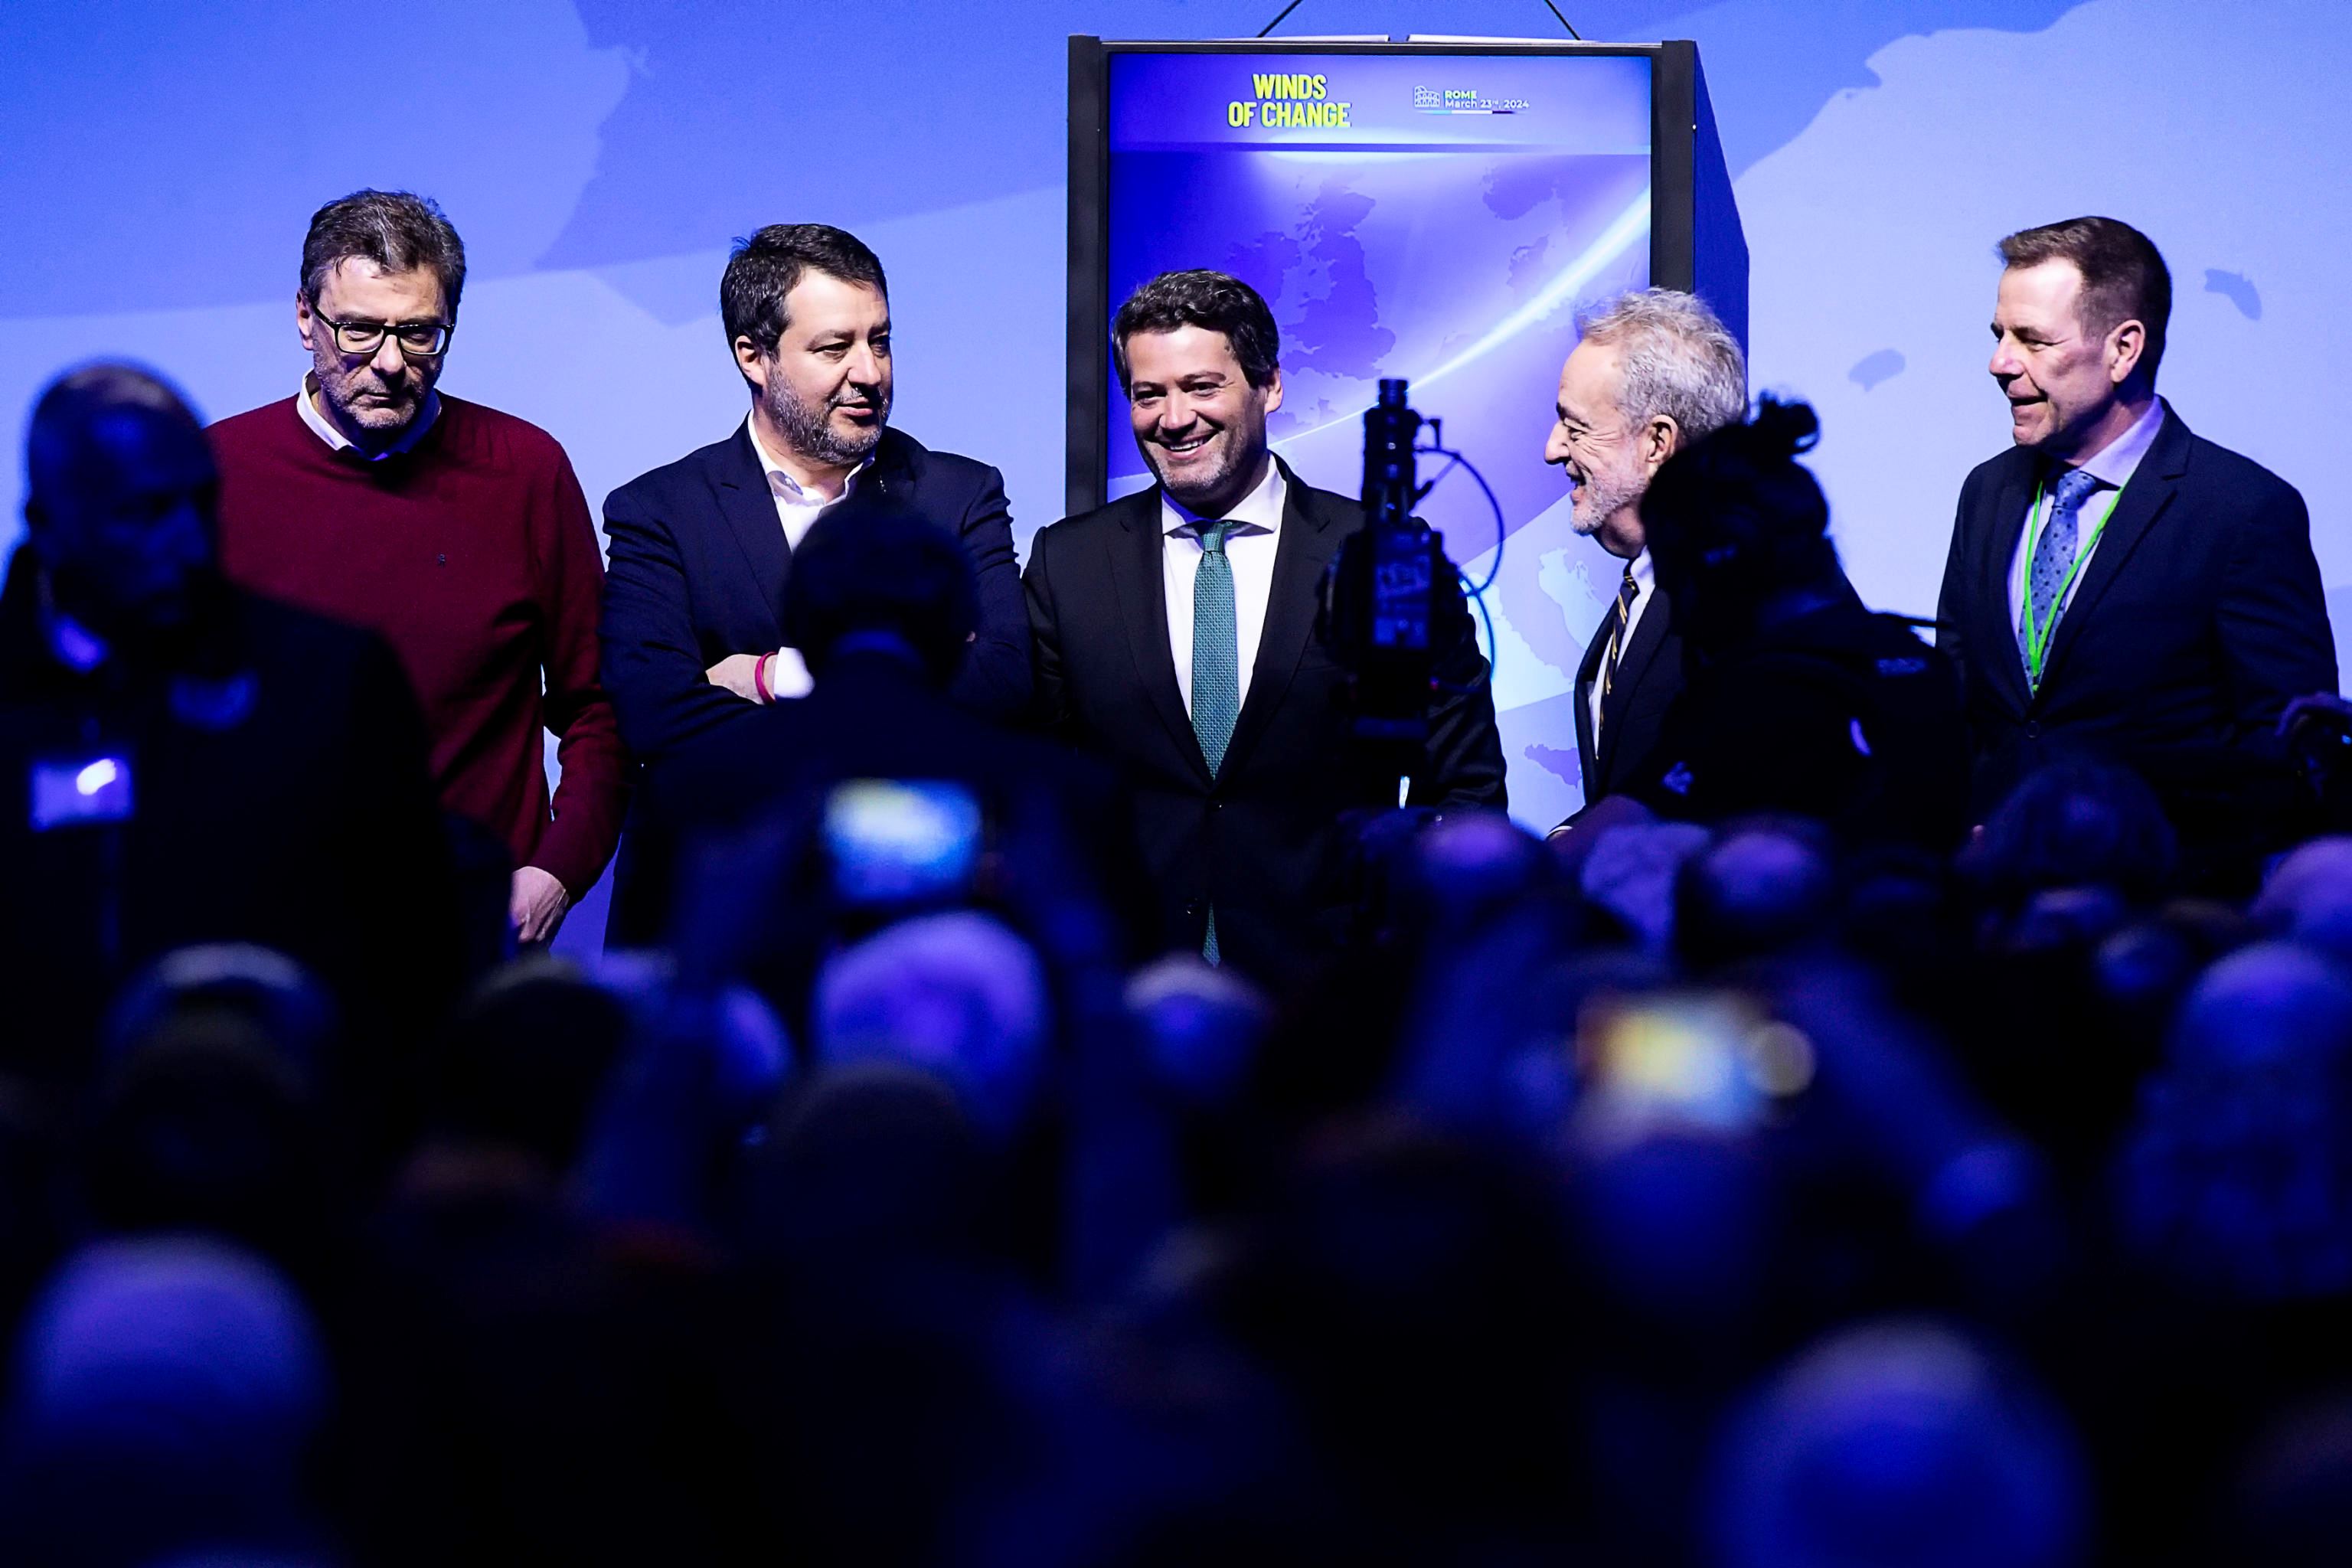 Foto di gruppo alla convention 'Winds of change', da sinistra: Giancarlo Giorgetti, Matteo Salvini, André Ventura, Gerolf Annemans, Harald Vilimsky